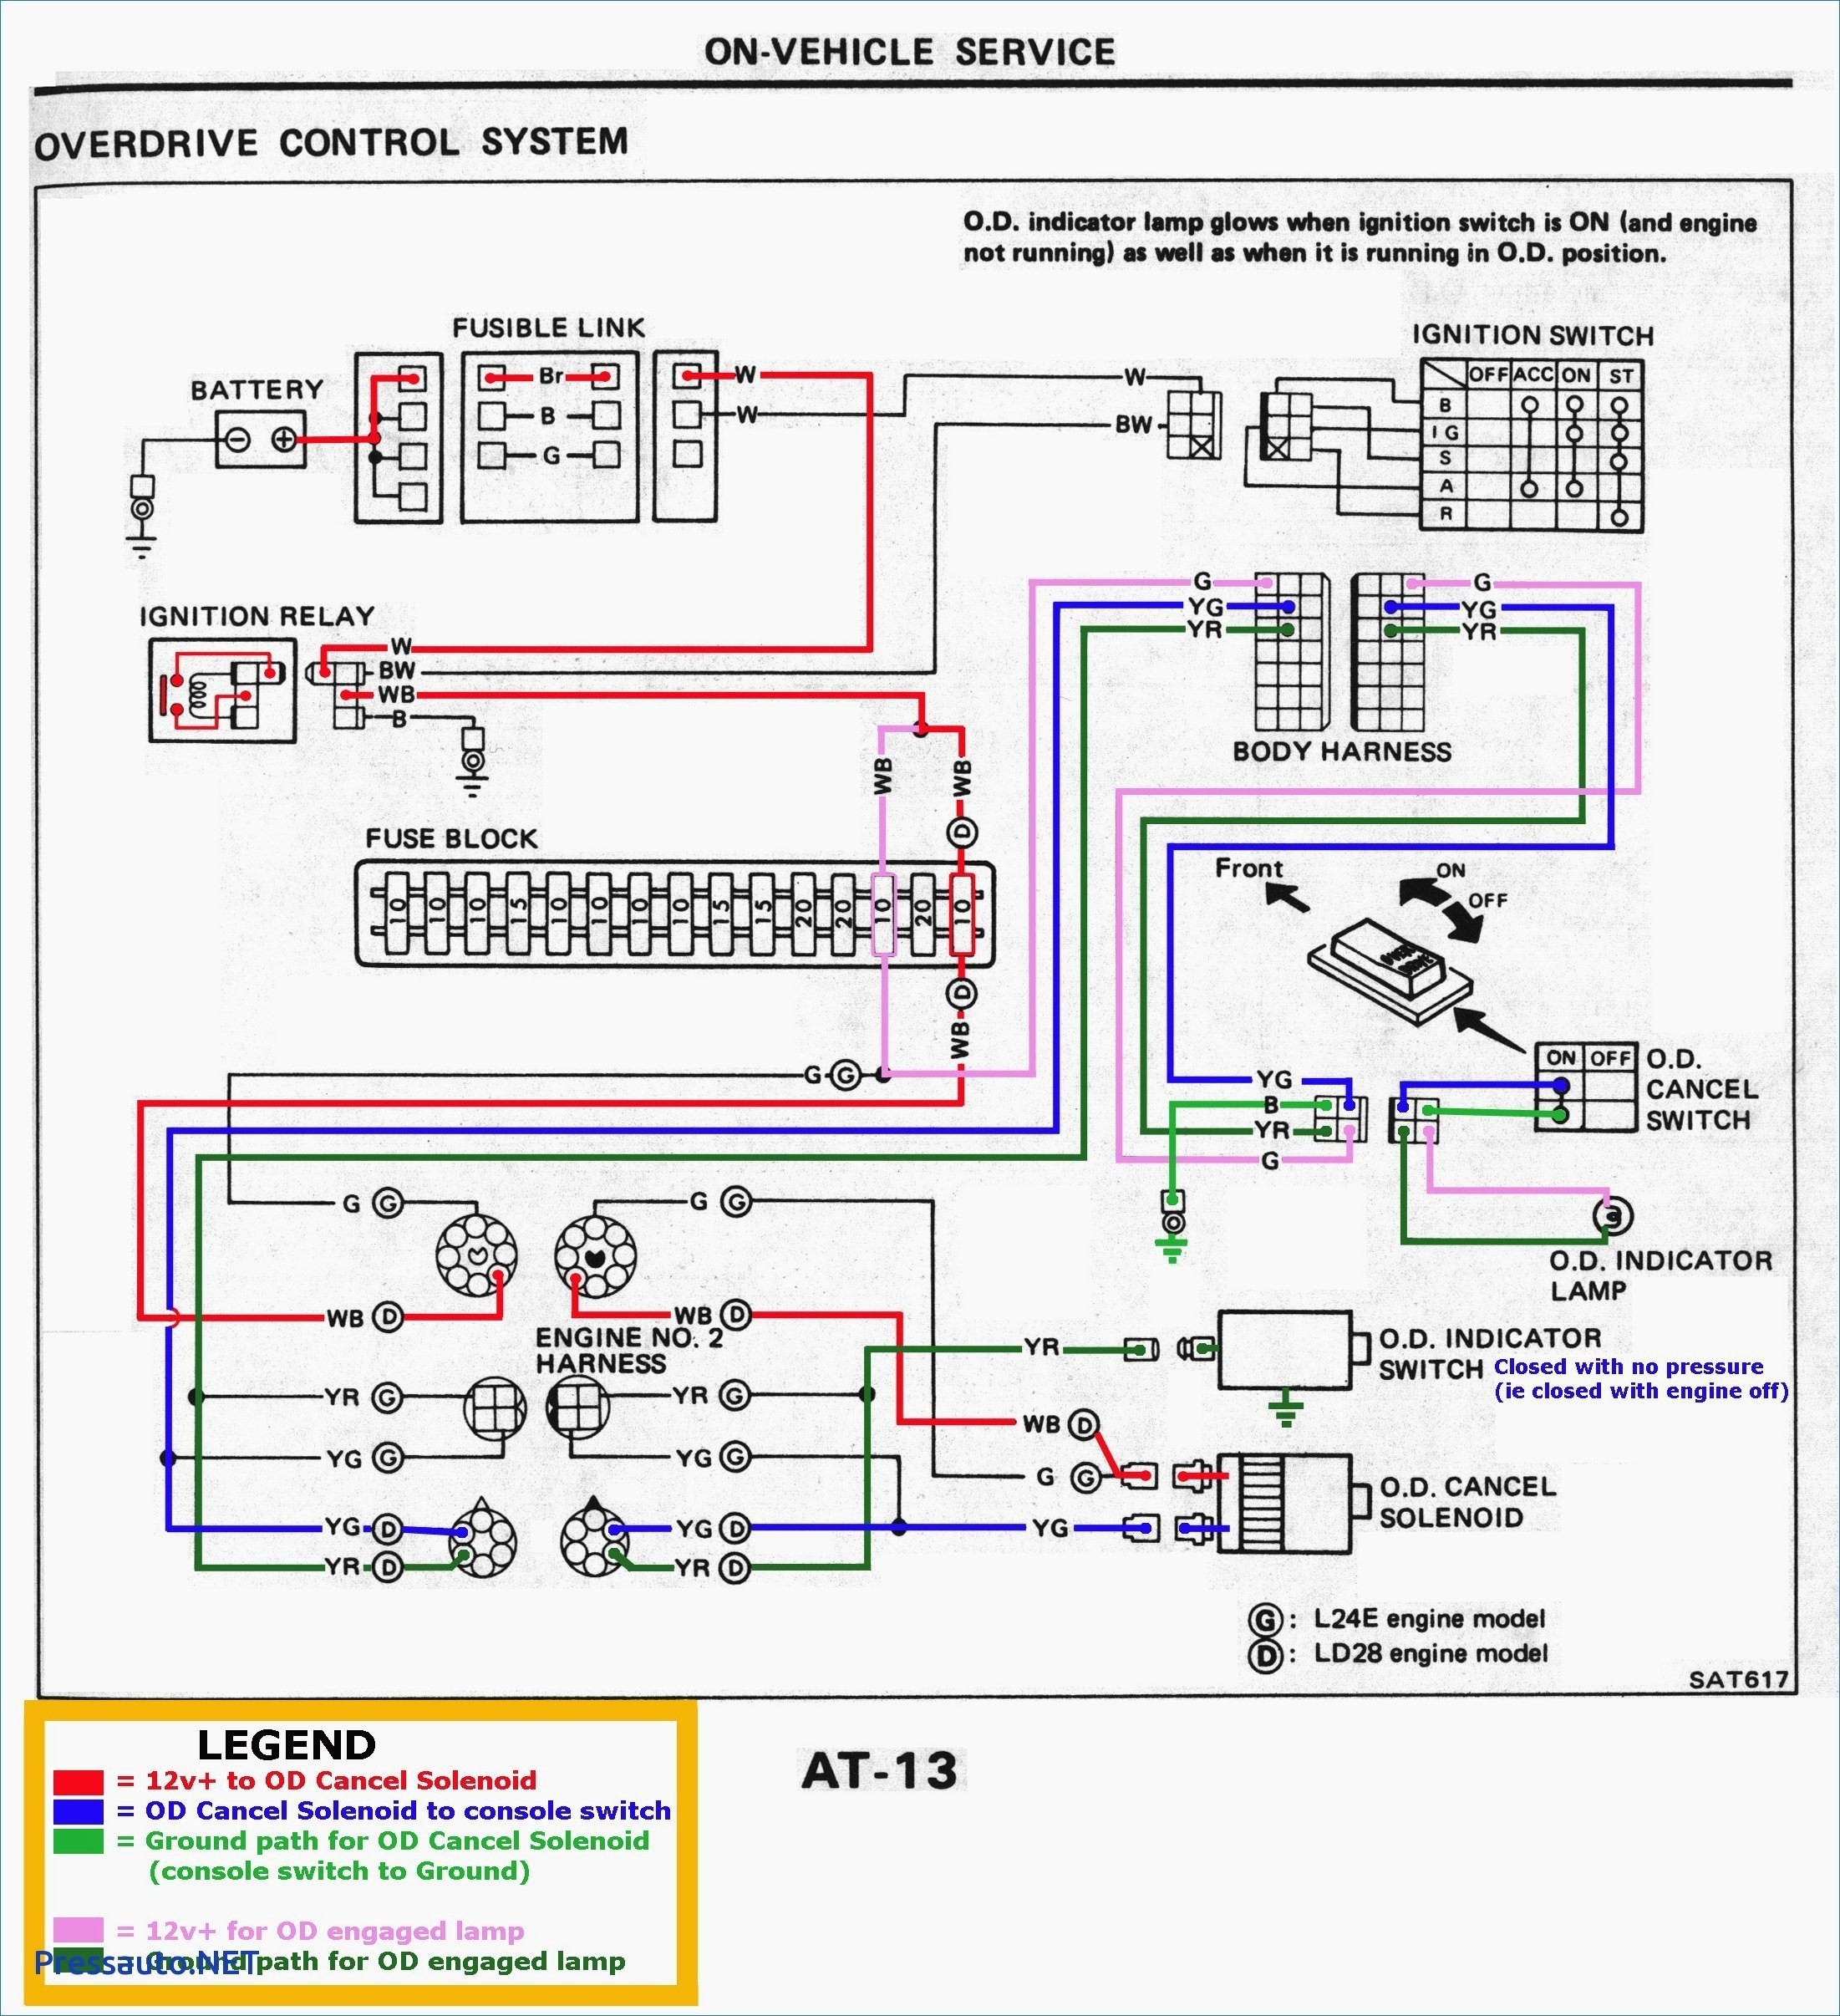 2008 Saturn Vue Engine Diagram Saturn Ion Engine Diagram Wiring Diagram Datasource Of 2008 Saturn Vue Engine Diagram